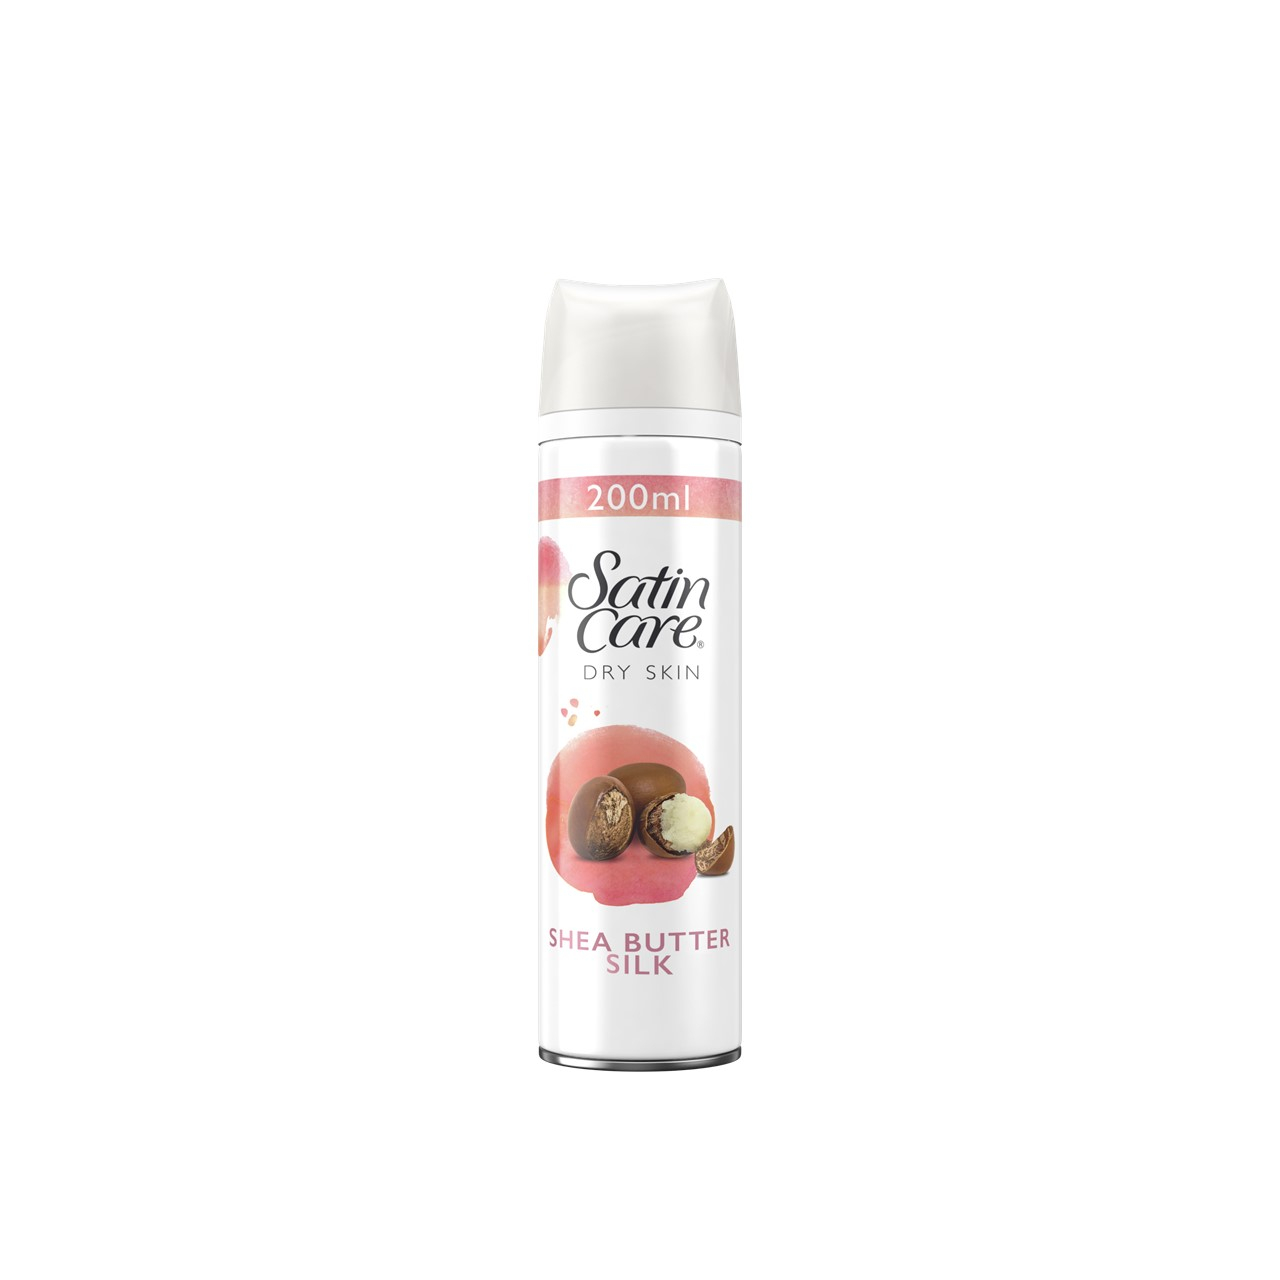 Gillette Venus Satin Care Dry Skin Shea Butter Shave Gel 200ml